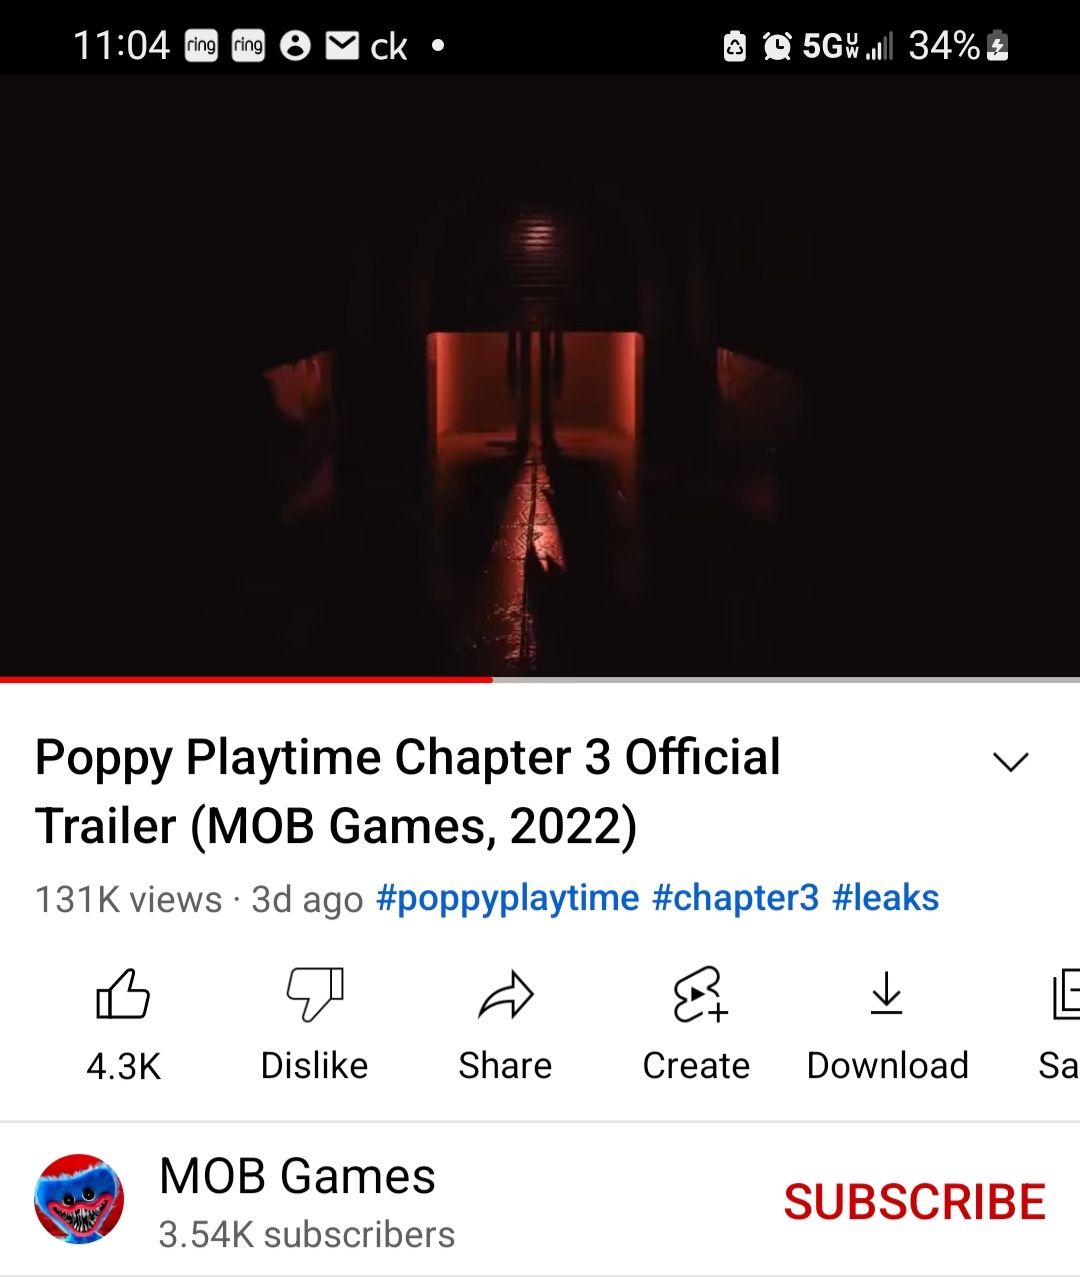 Poppy Playtime: Chapter 3 - Official TEASER TRAILER 2022 